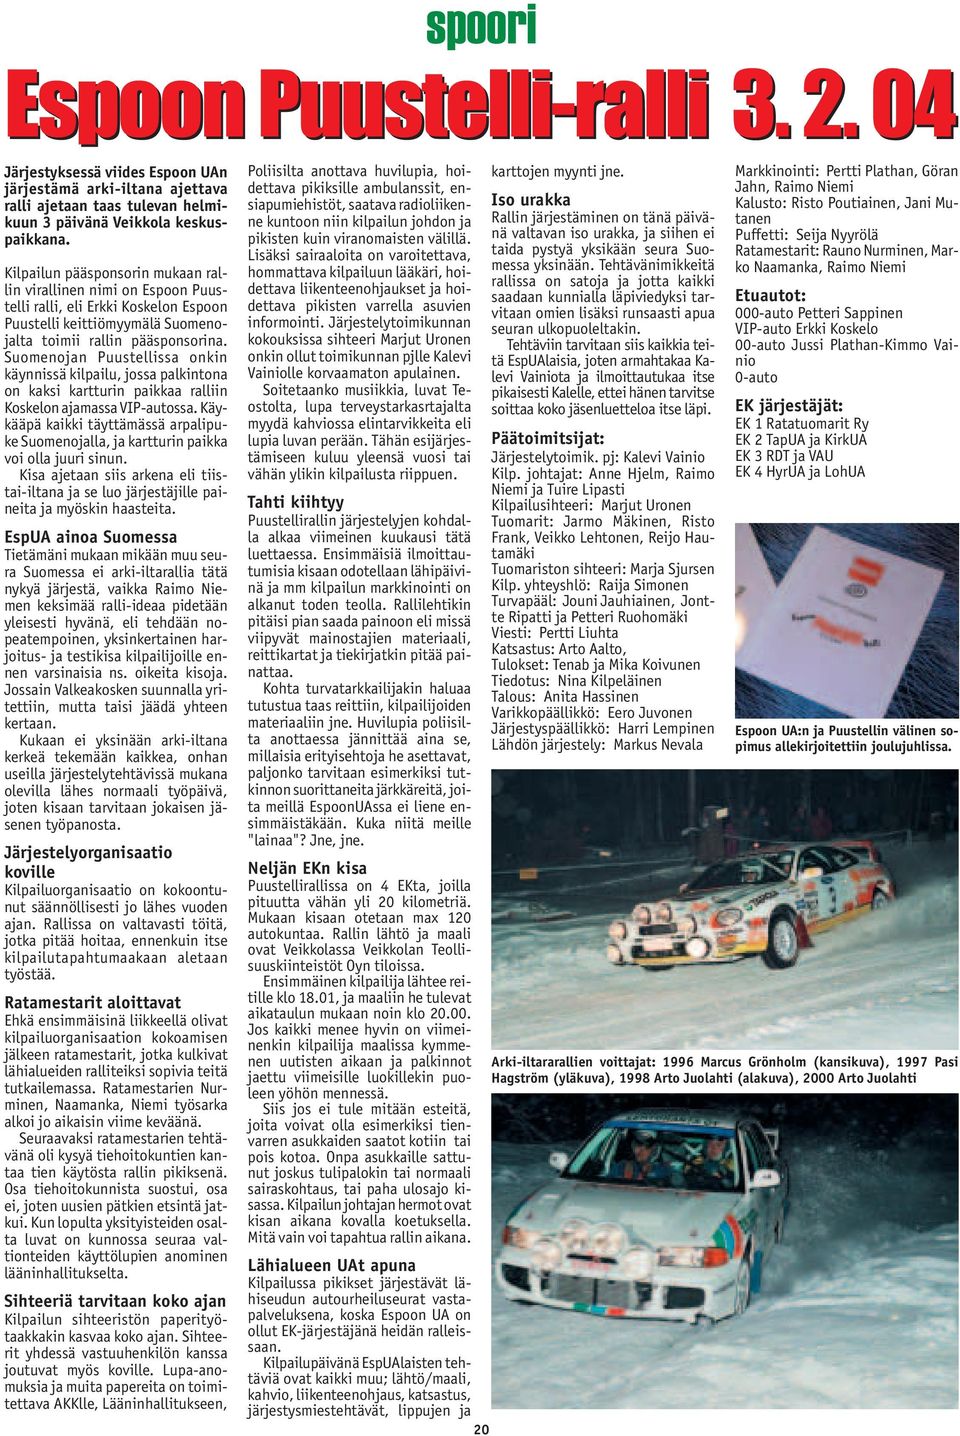 Suomenojan Puustellissa onkin käynnissä kilpailu, jossa palkintona on kaksi kartturin paikkaa ralliin Koskelon ajamassa VIP-autossa.